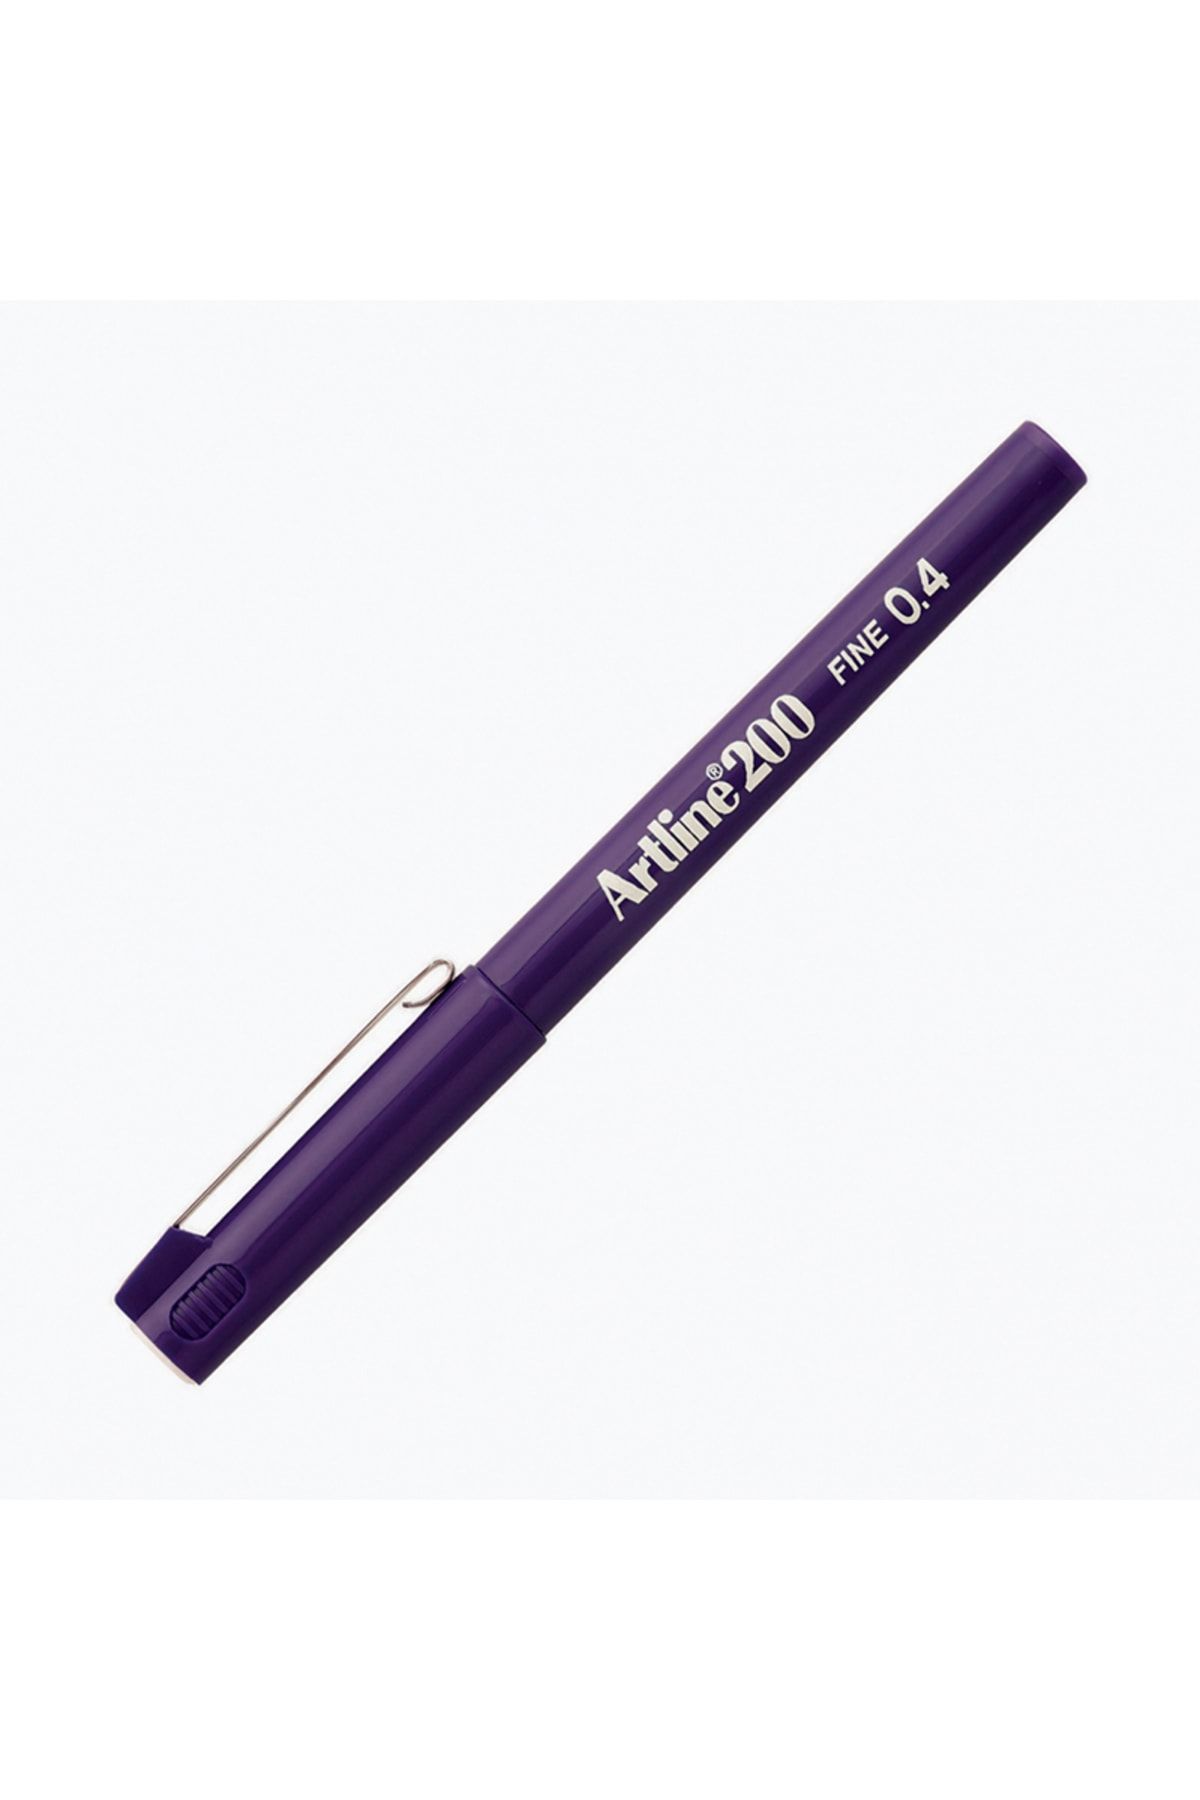 artline 200 Fineliner Yazı Ve Çizim Kalemi 0,4mm Mor